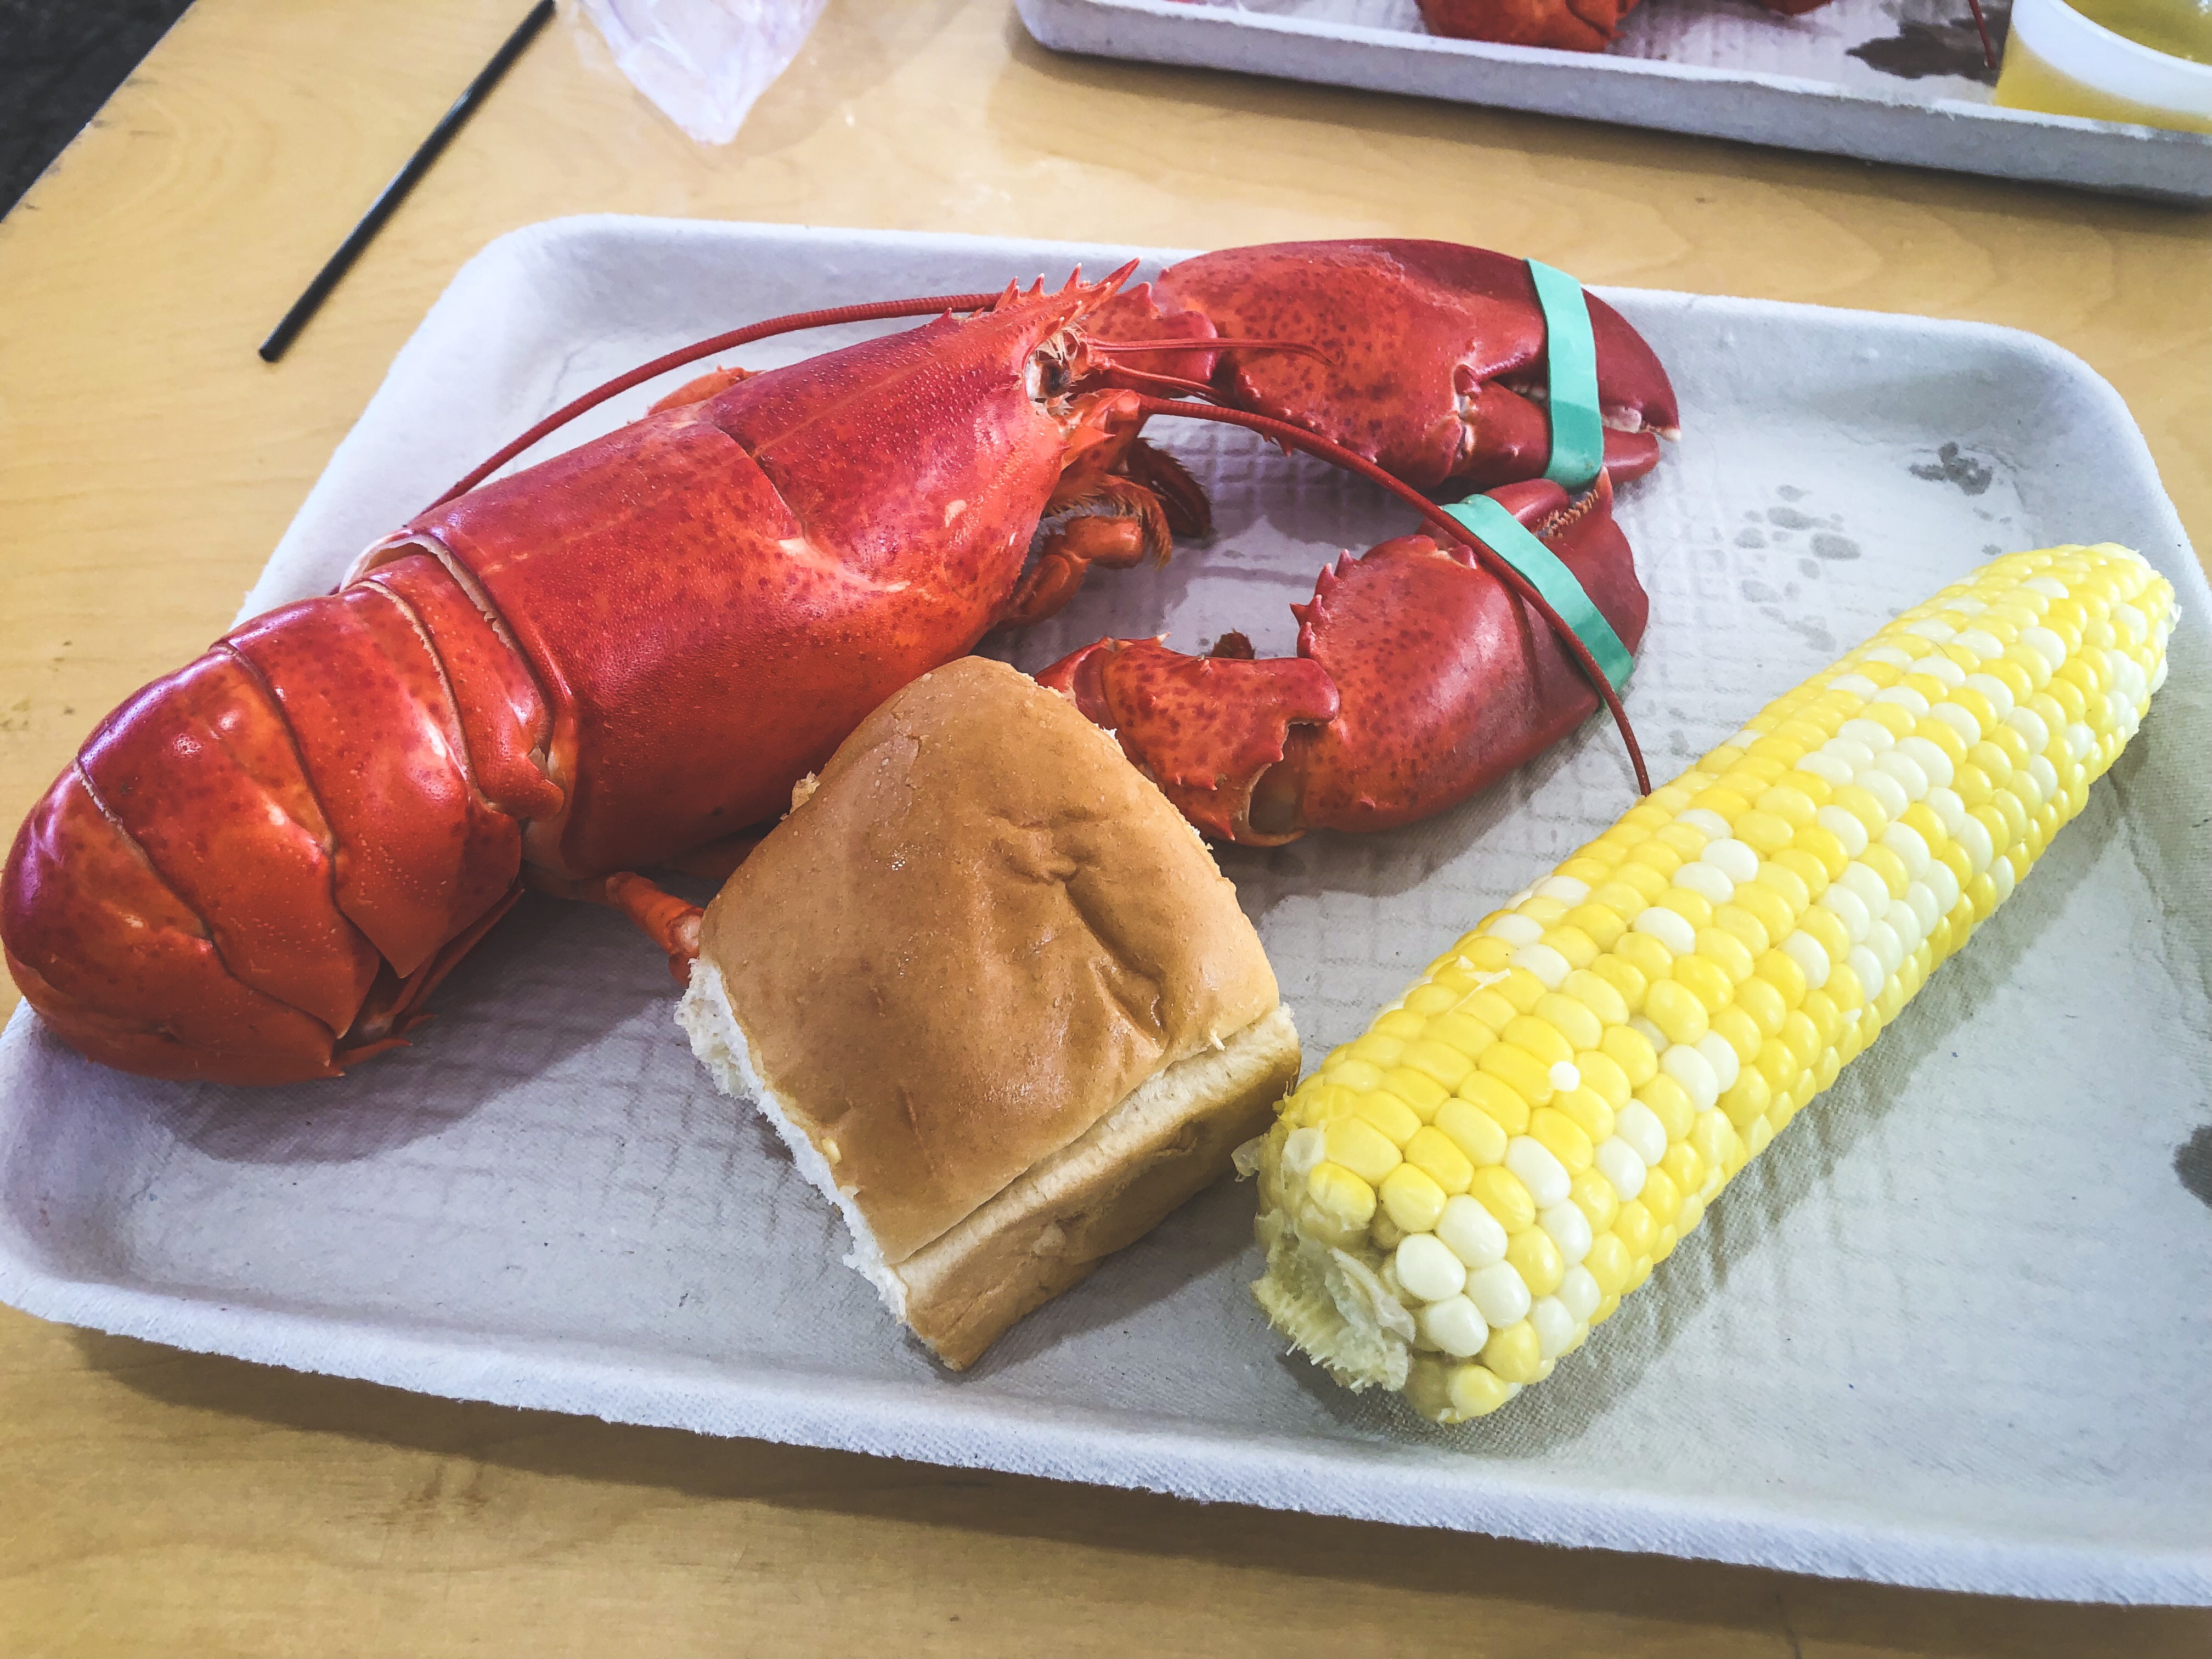 Lobster Festival 